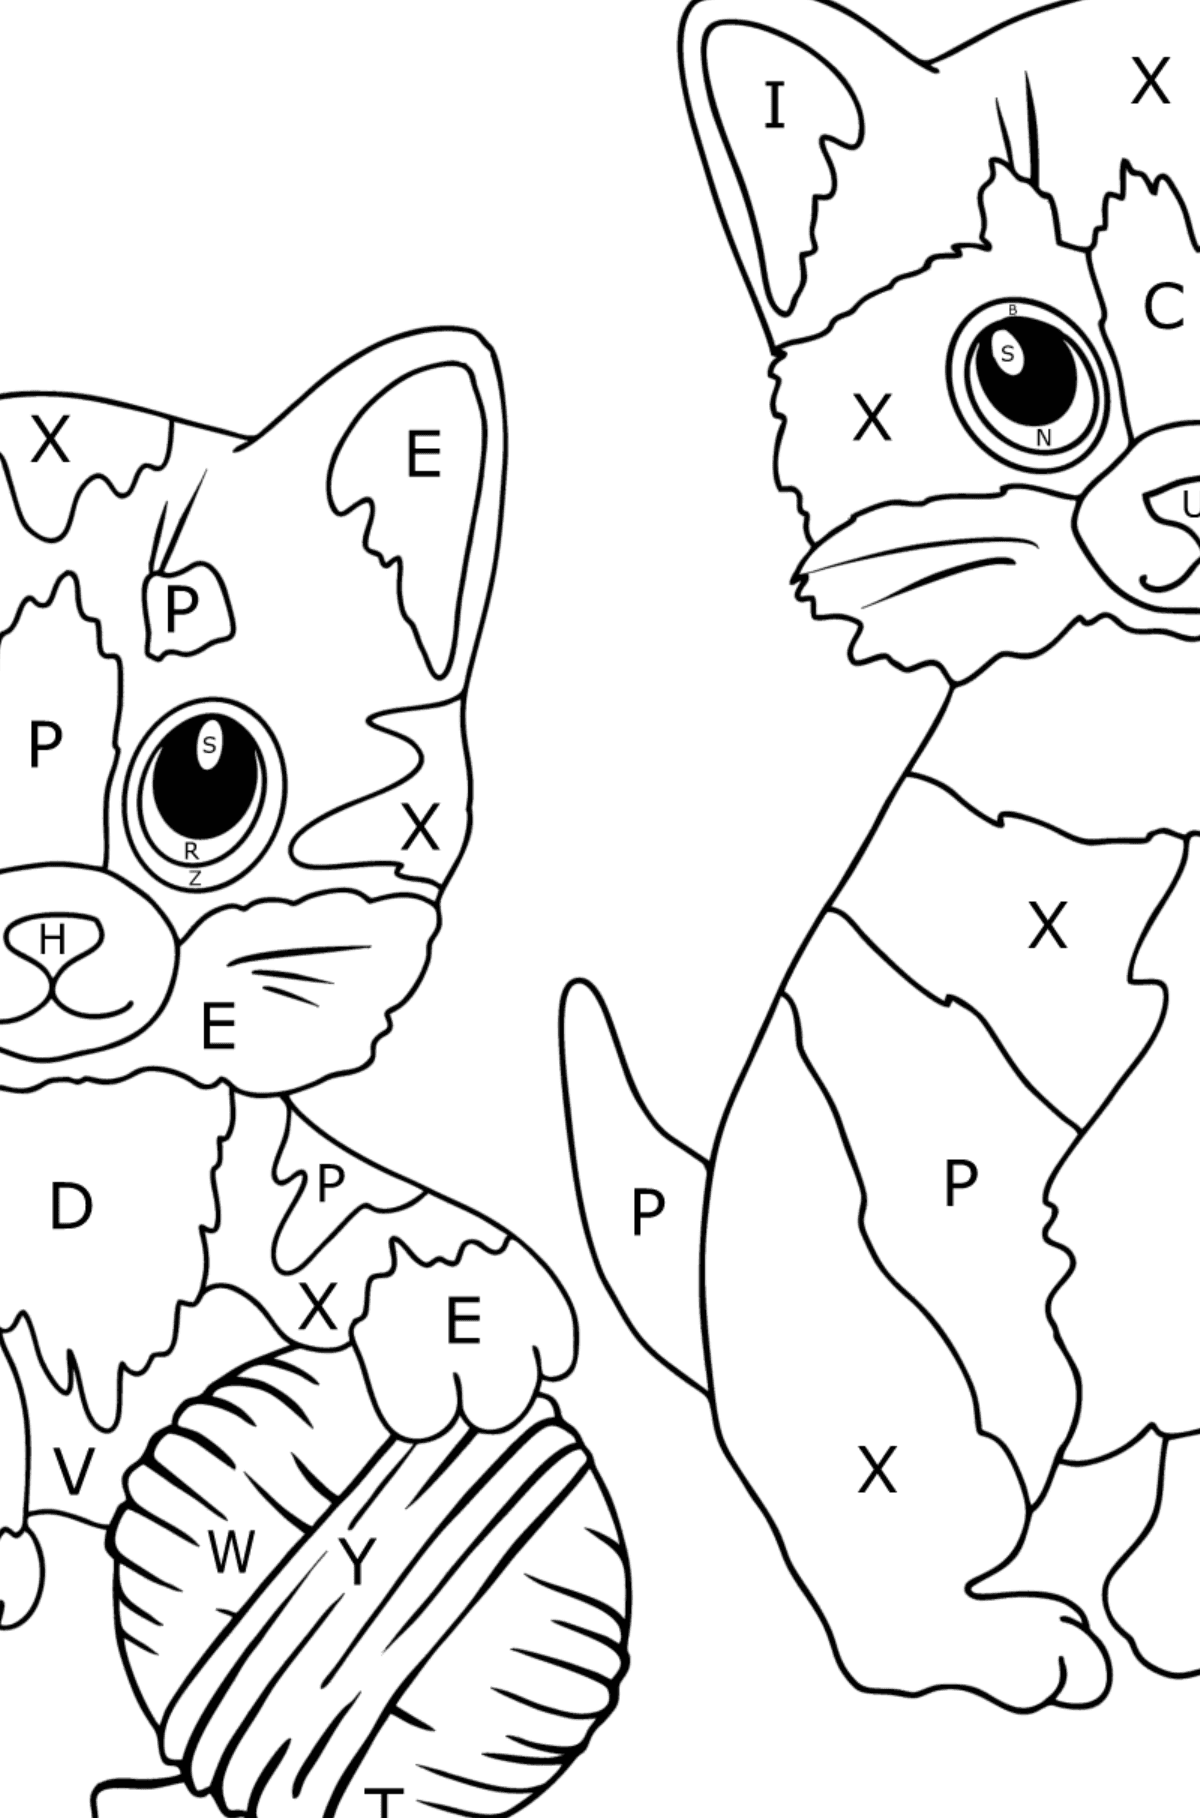 Disegno da colorare di gattini e un gomitolo di filo - Colorare per lettere per bambini